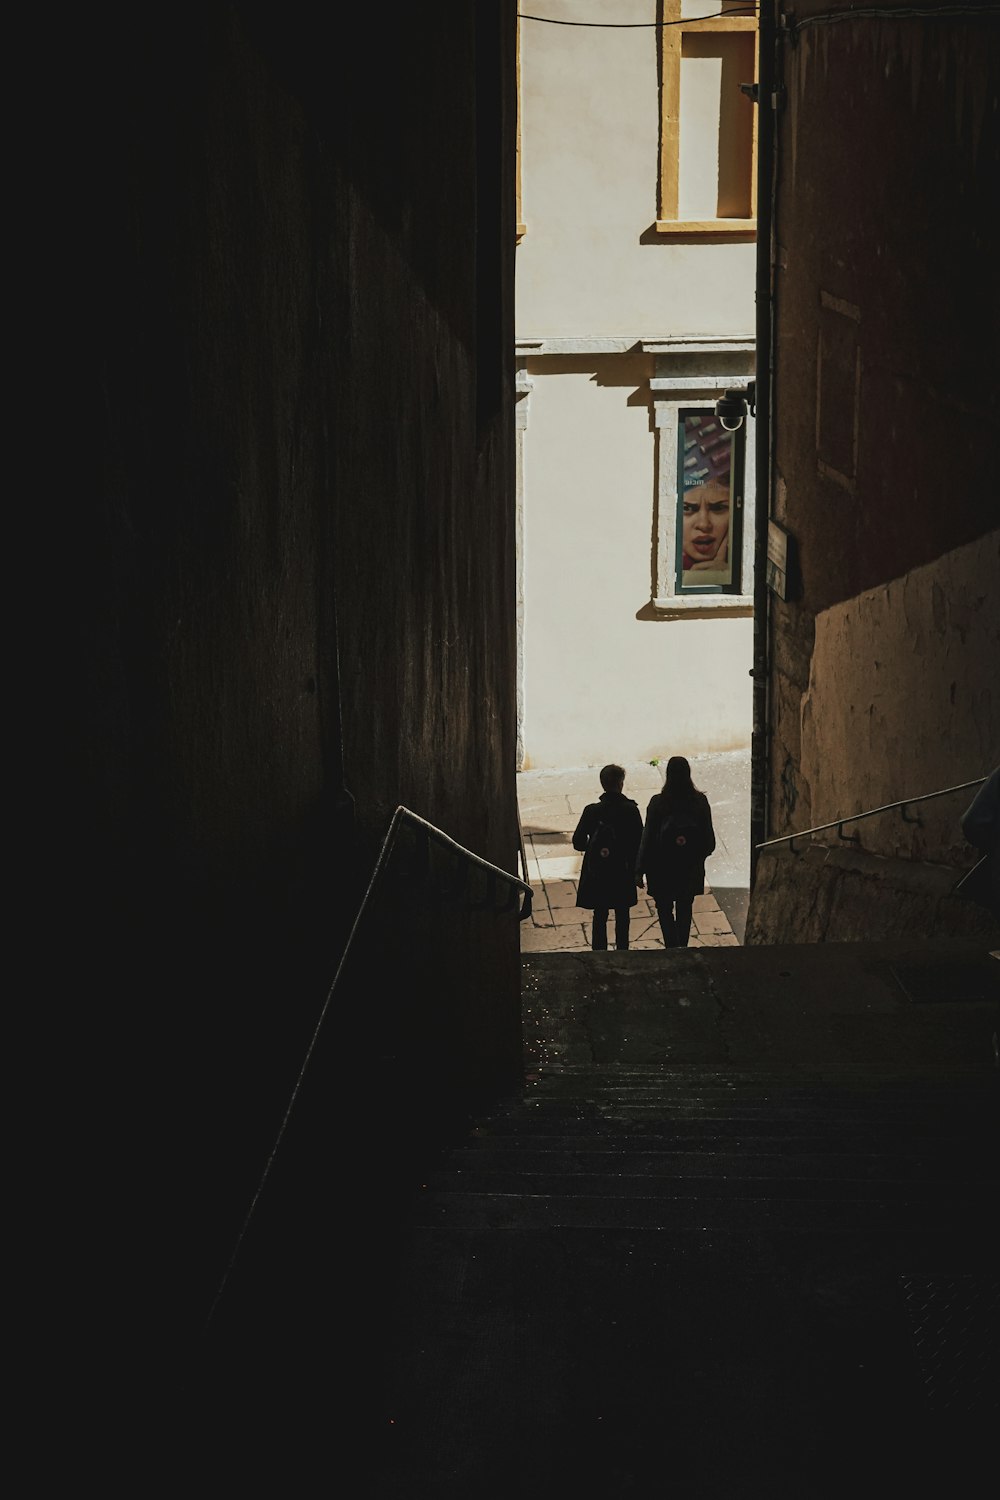 Dos personas caminando por un callejón oscuro